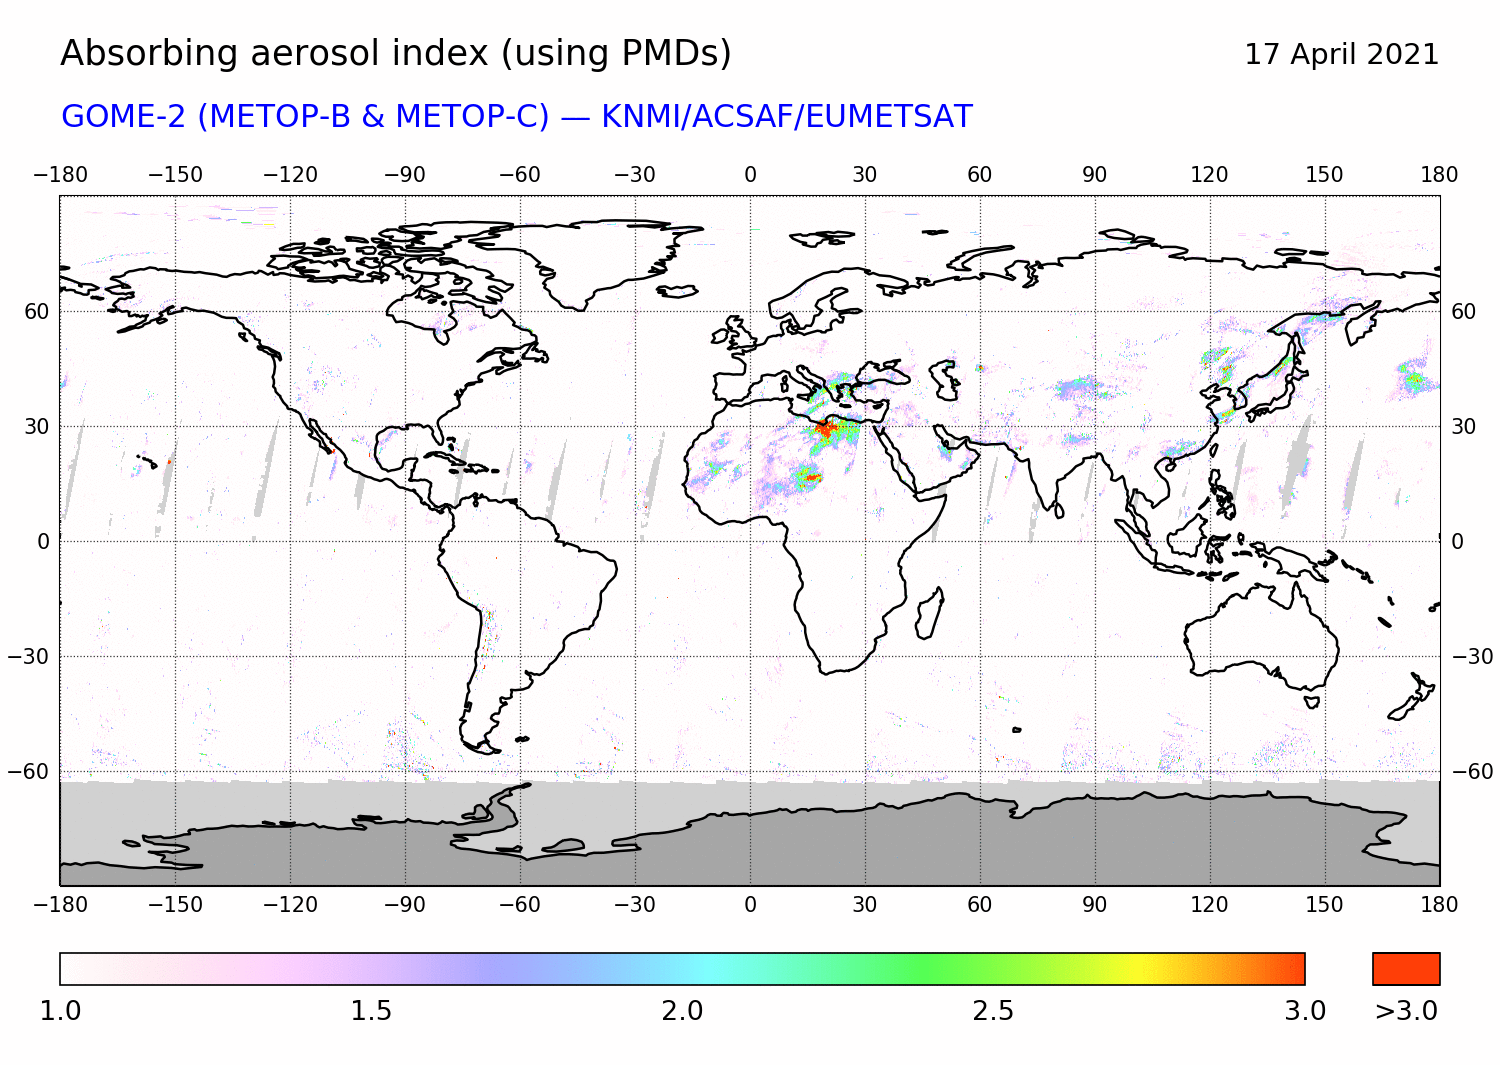 GOME-2 - Absorbing aerosol index of 17 April 2021